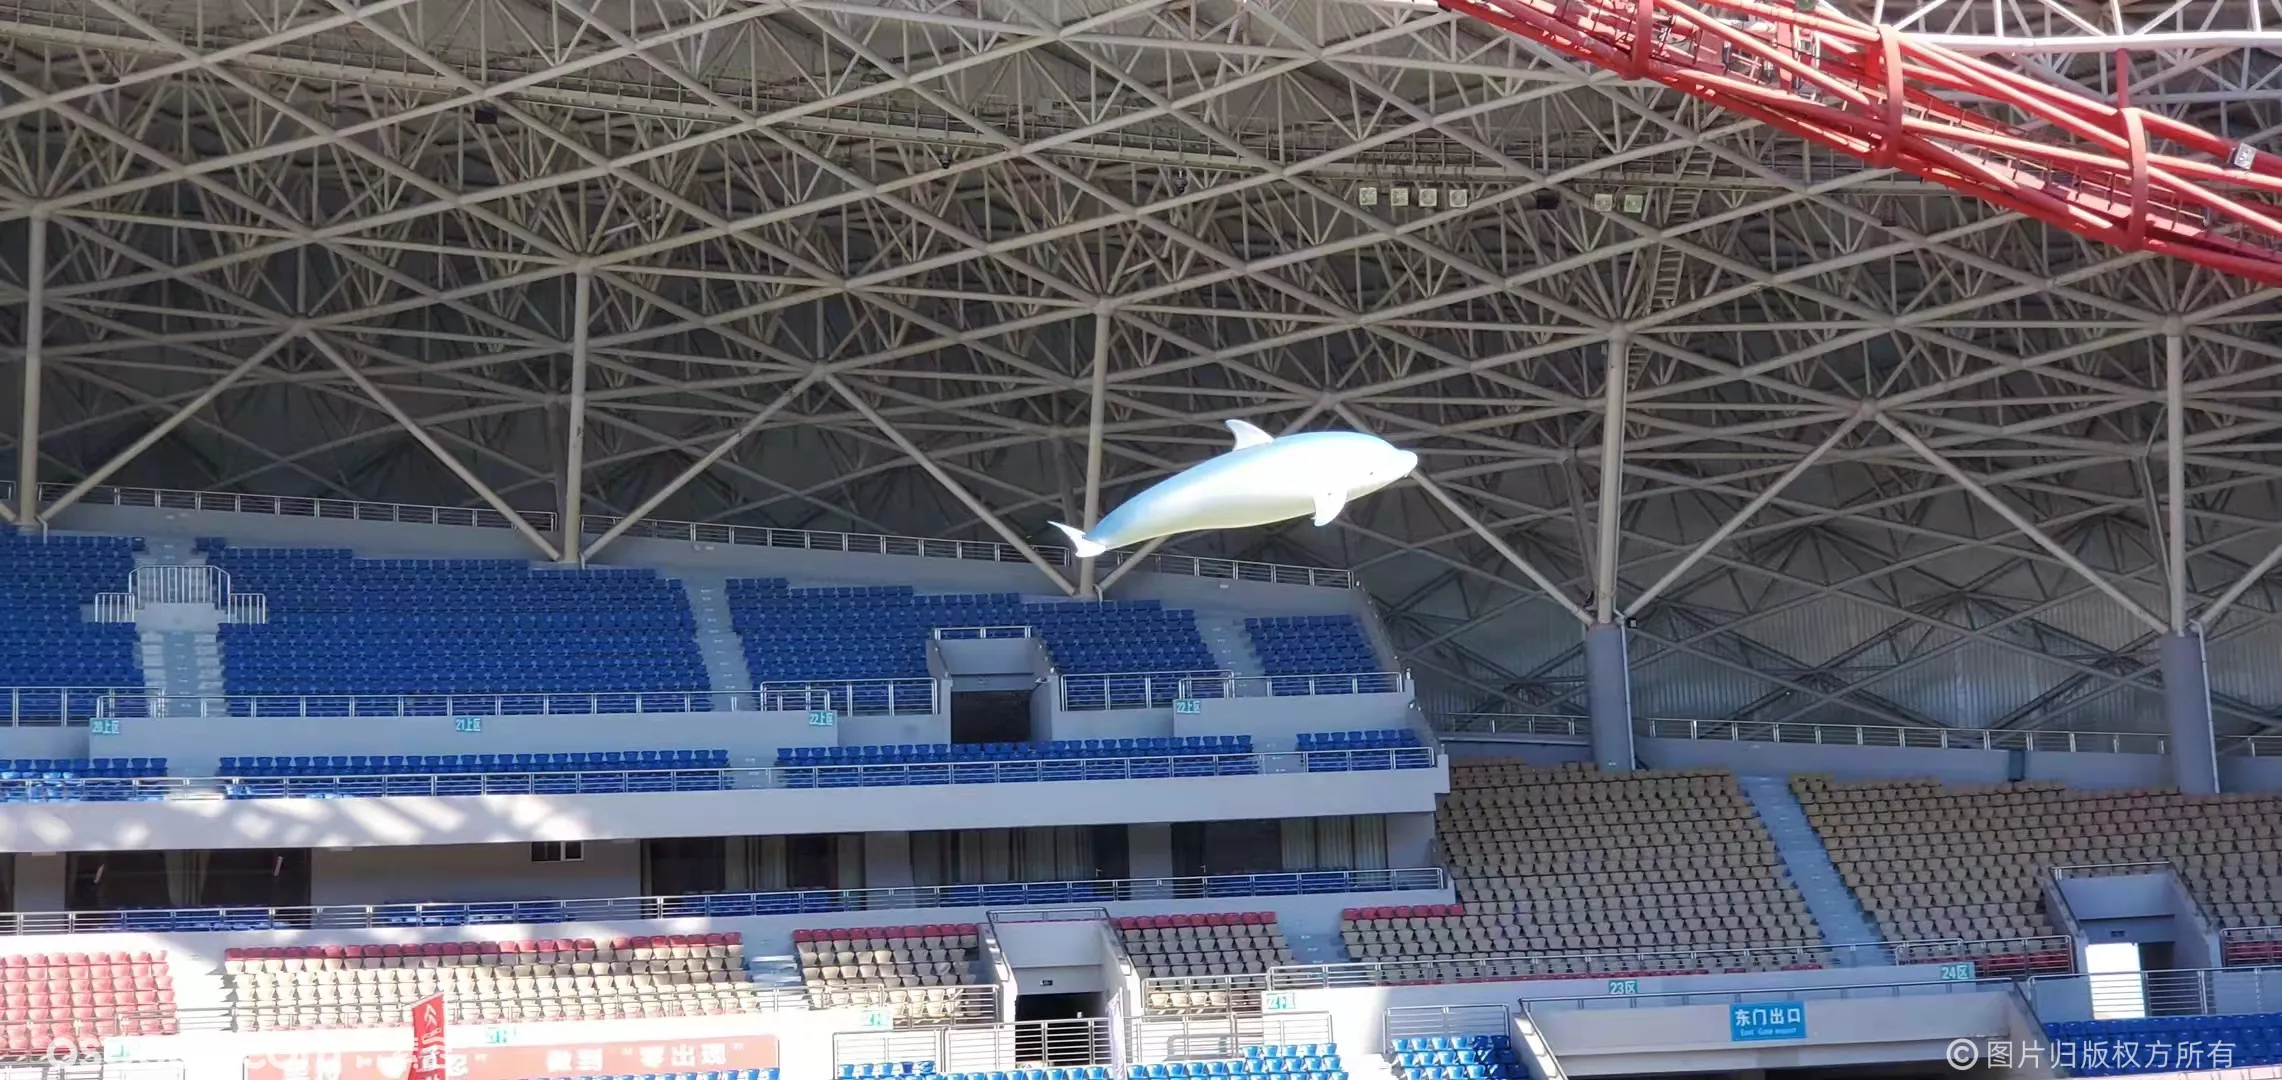 蓝色海豚飞行 飞行海豚 海豚无人机 空中海豚飞行 